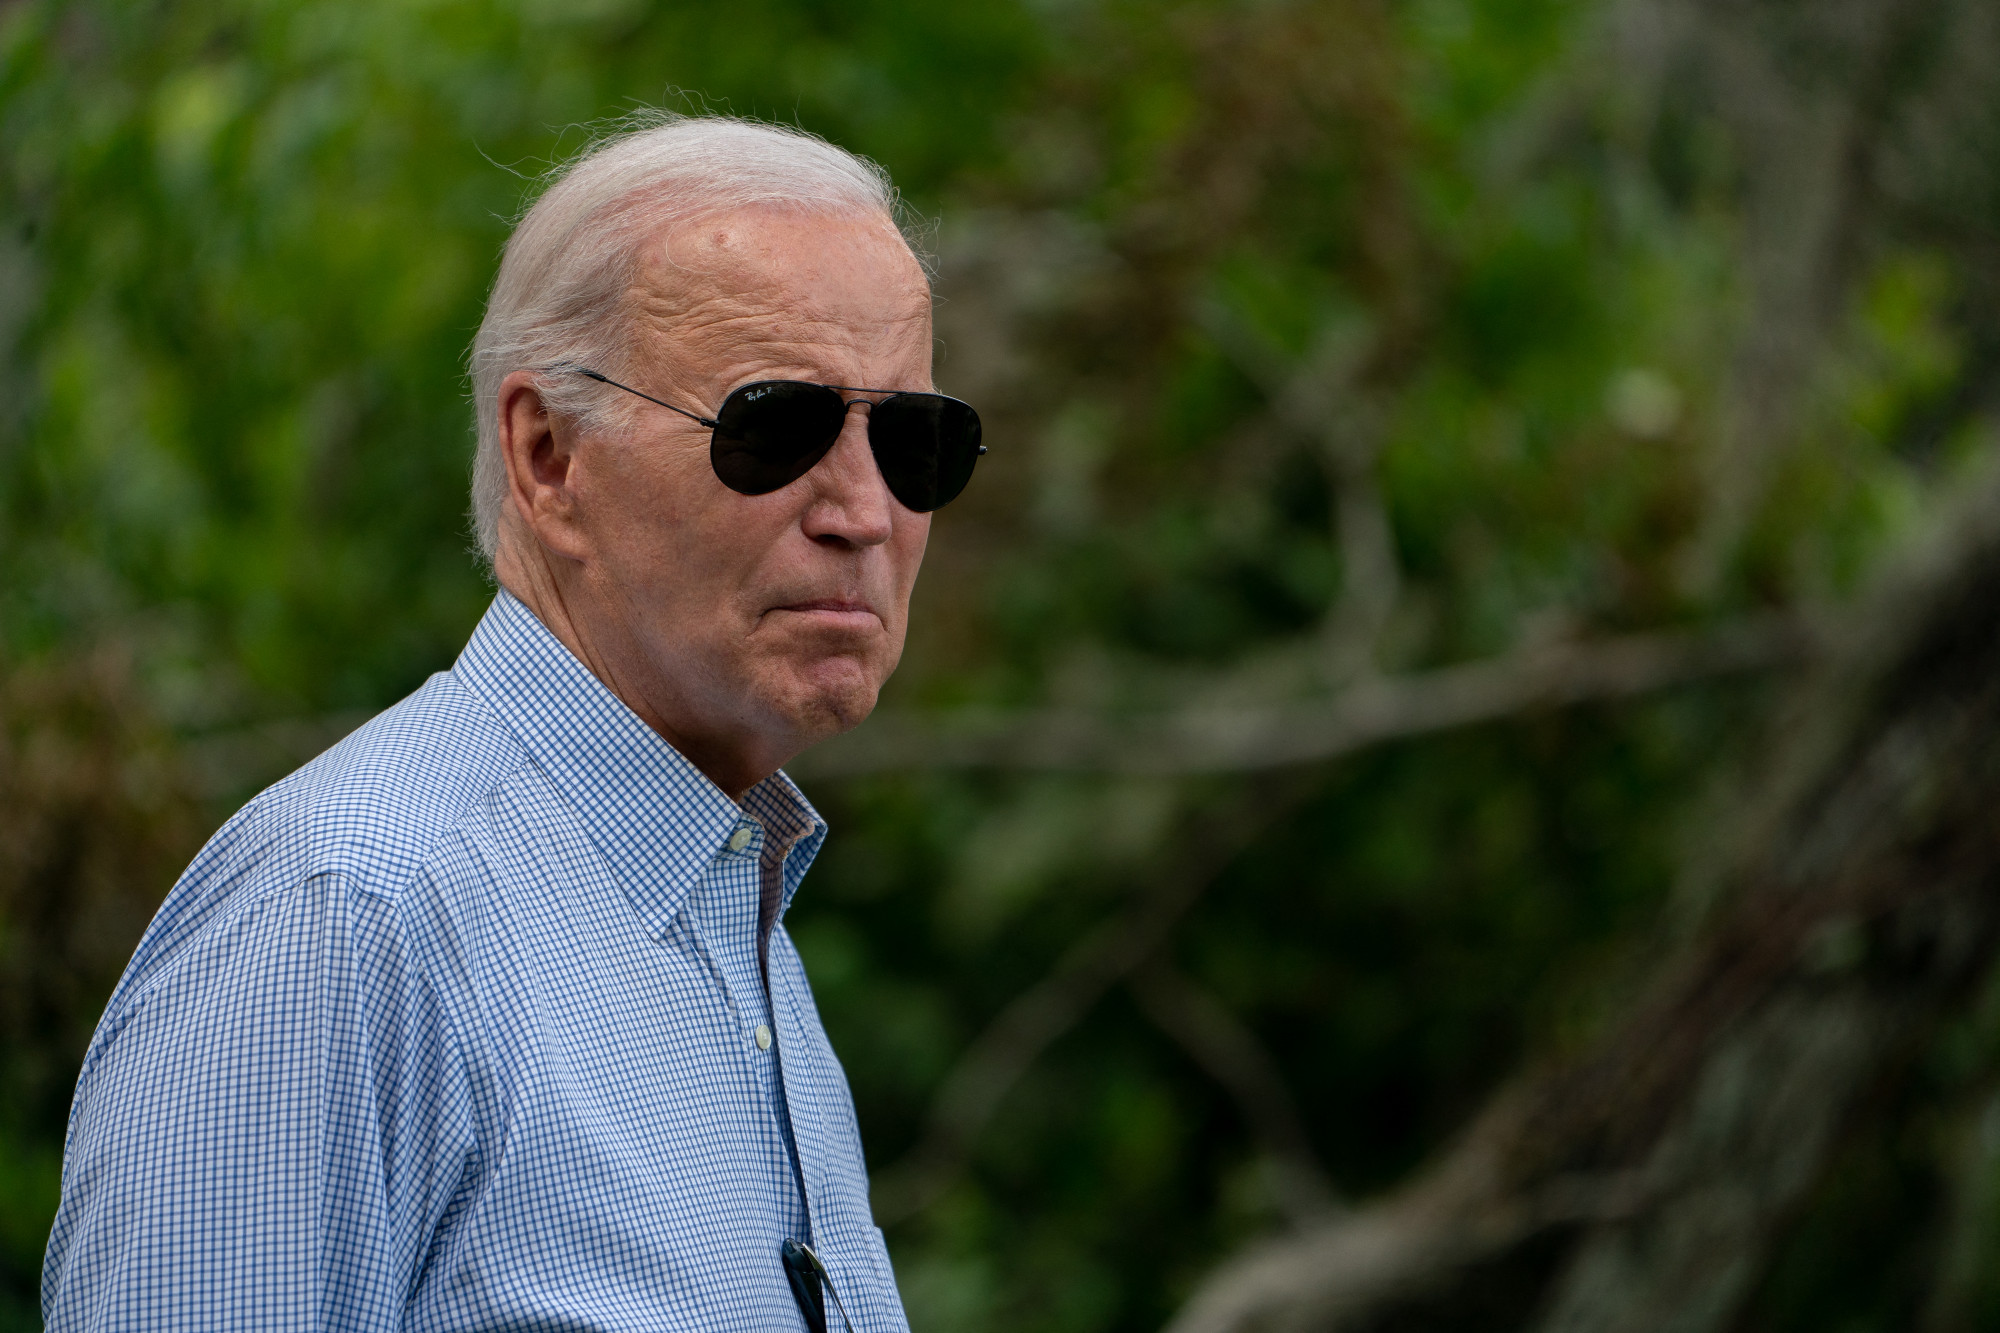 Joe Biden megtekintette ugyan a floridai károkat, de Ron DeSantisszal nem futott össze